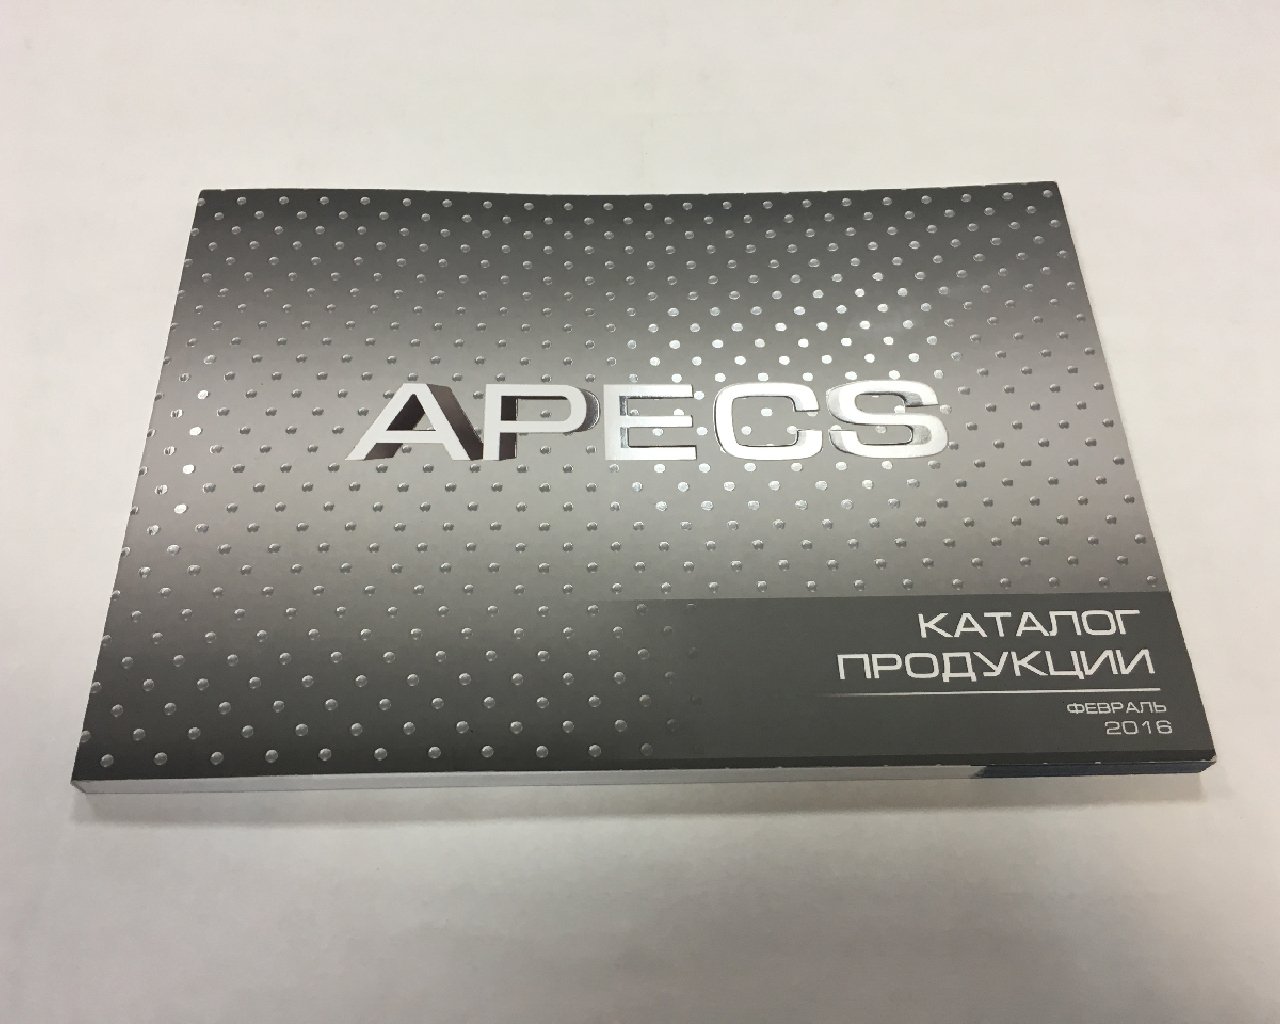 Каталог А5 - продукция Apecs 2016